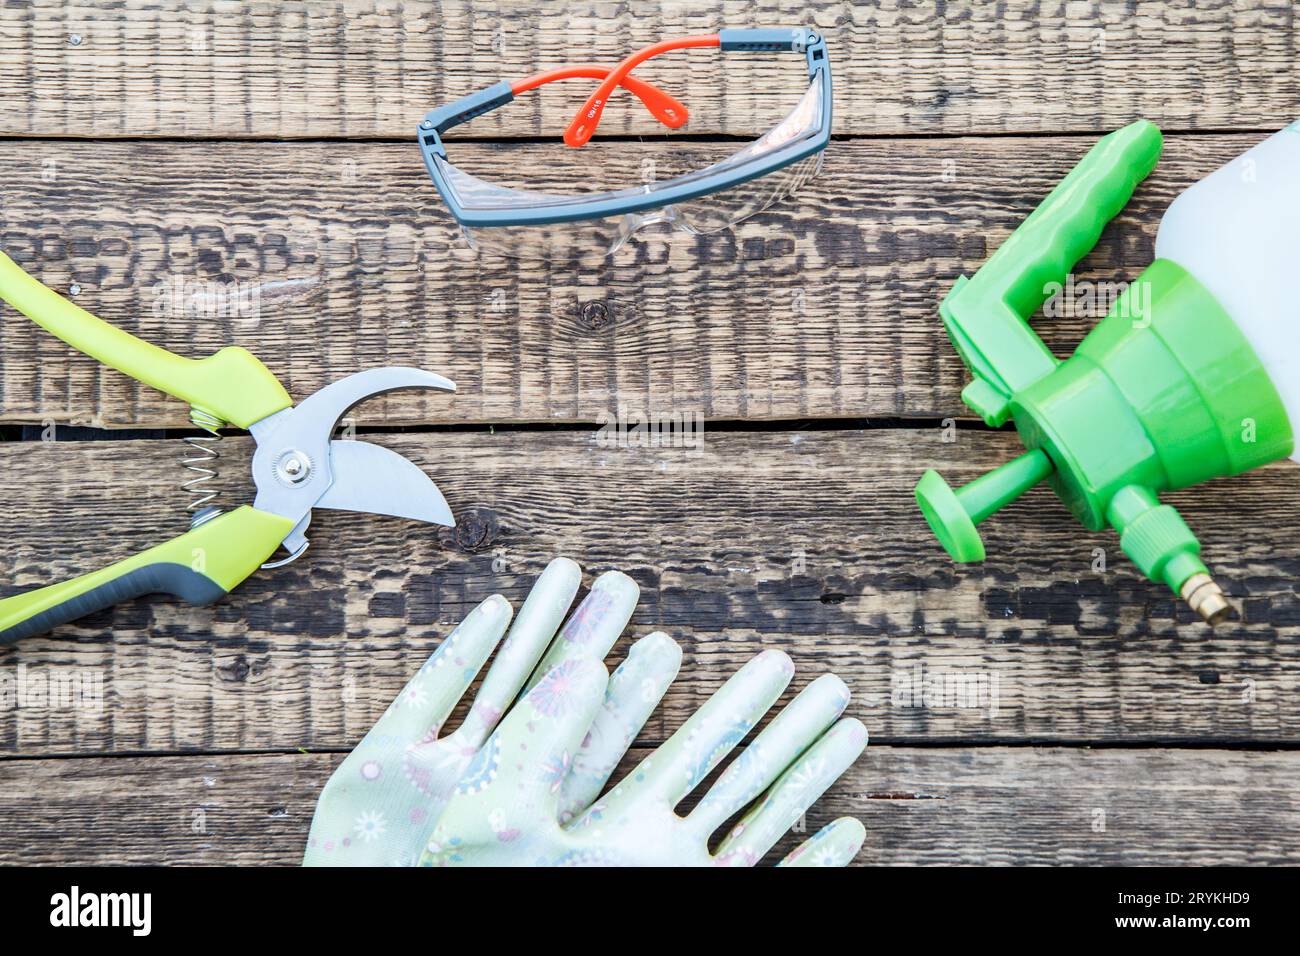 Gartenentaster, Drucksprüher, Gartenhandschuhe und Schutzbrille auf den Holzbrettern Stockfoto